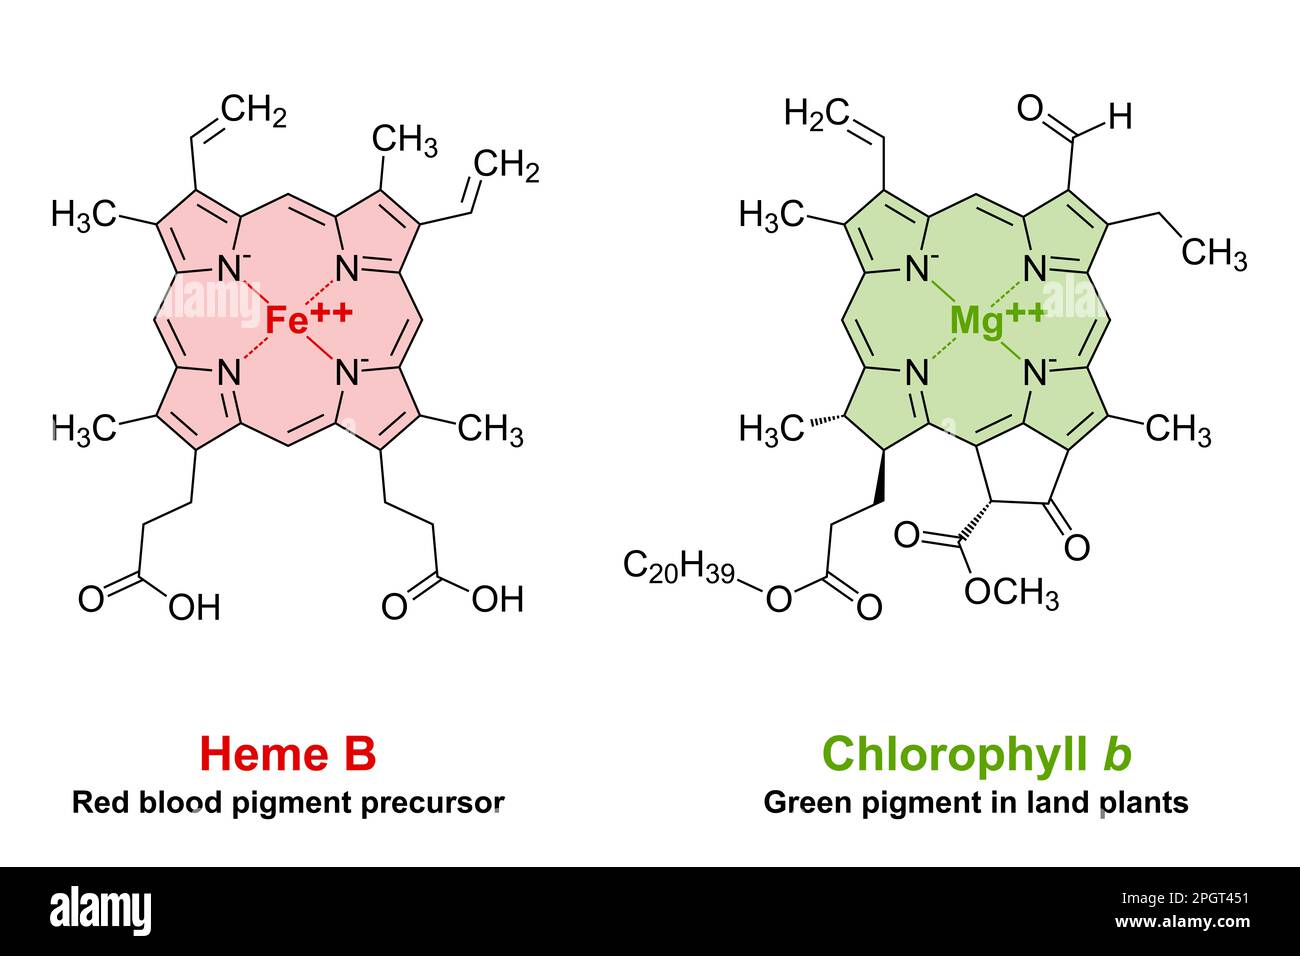 Somiglianze tra eme e clorofilla nella struttura chimica. Un anello di porfirina piano con 4 atomi di azoto, che lega un atomo di ferro o magnesio. Foto Stock